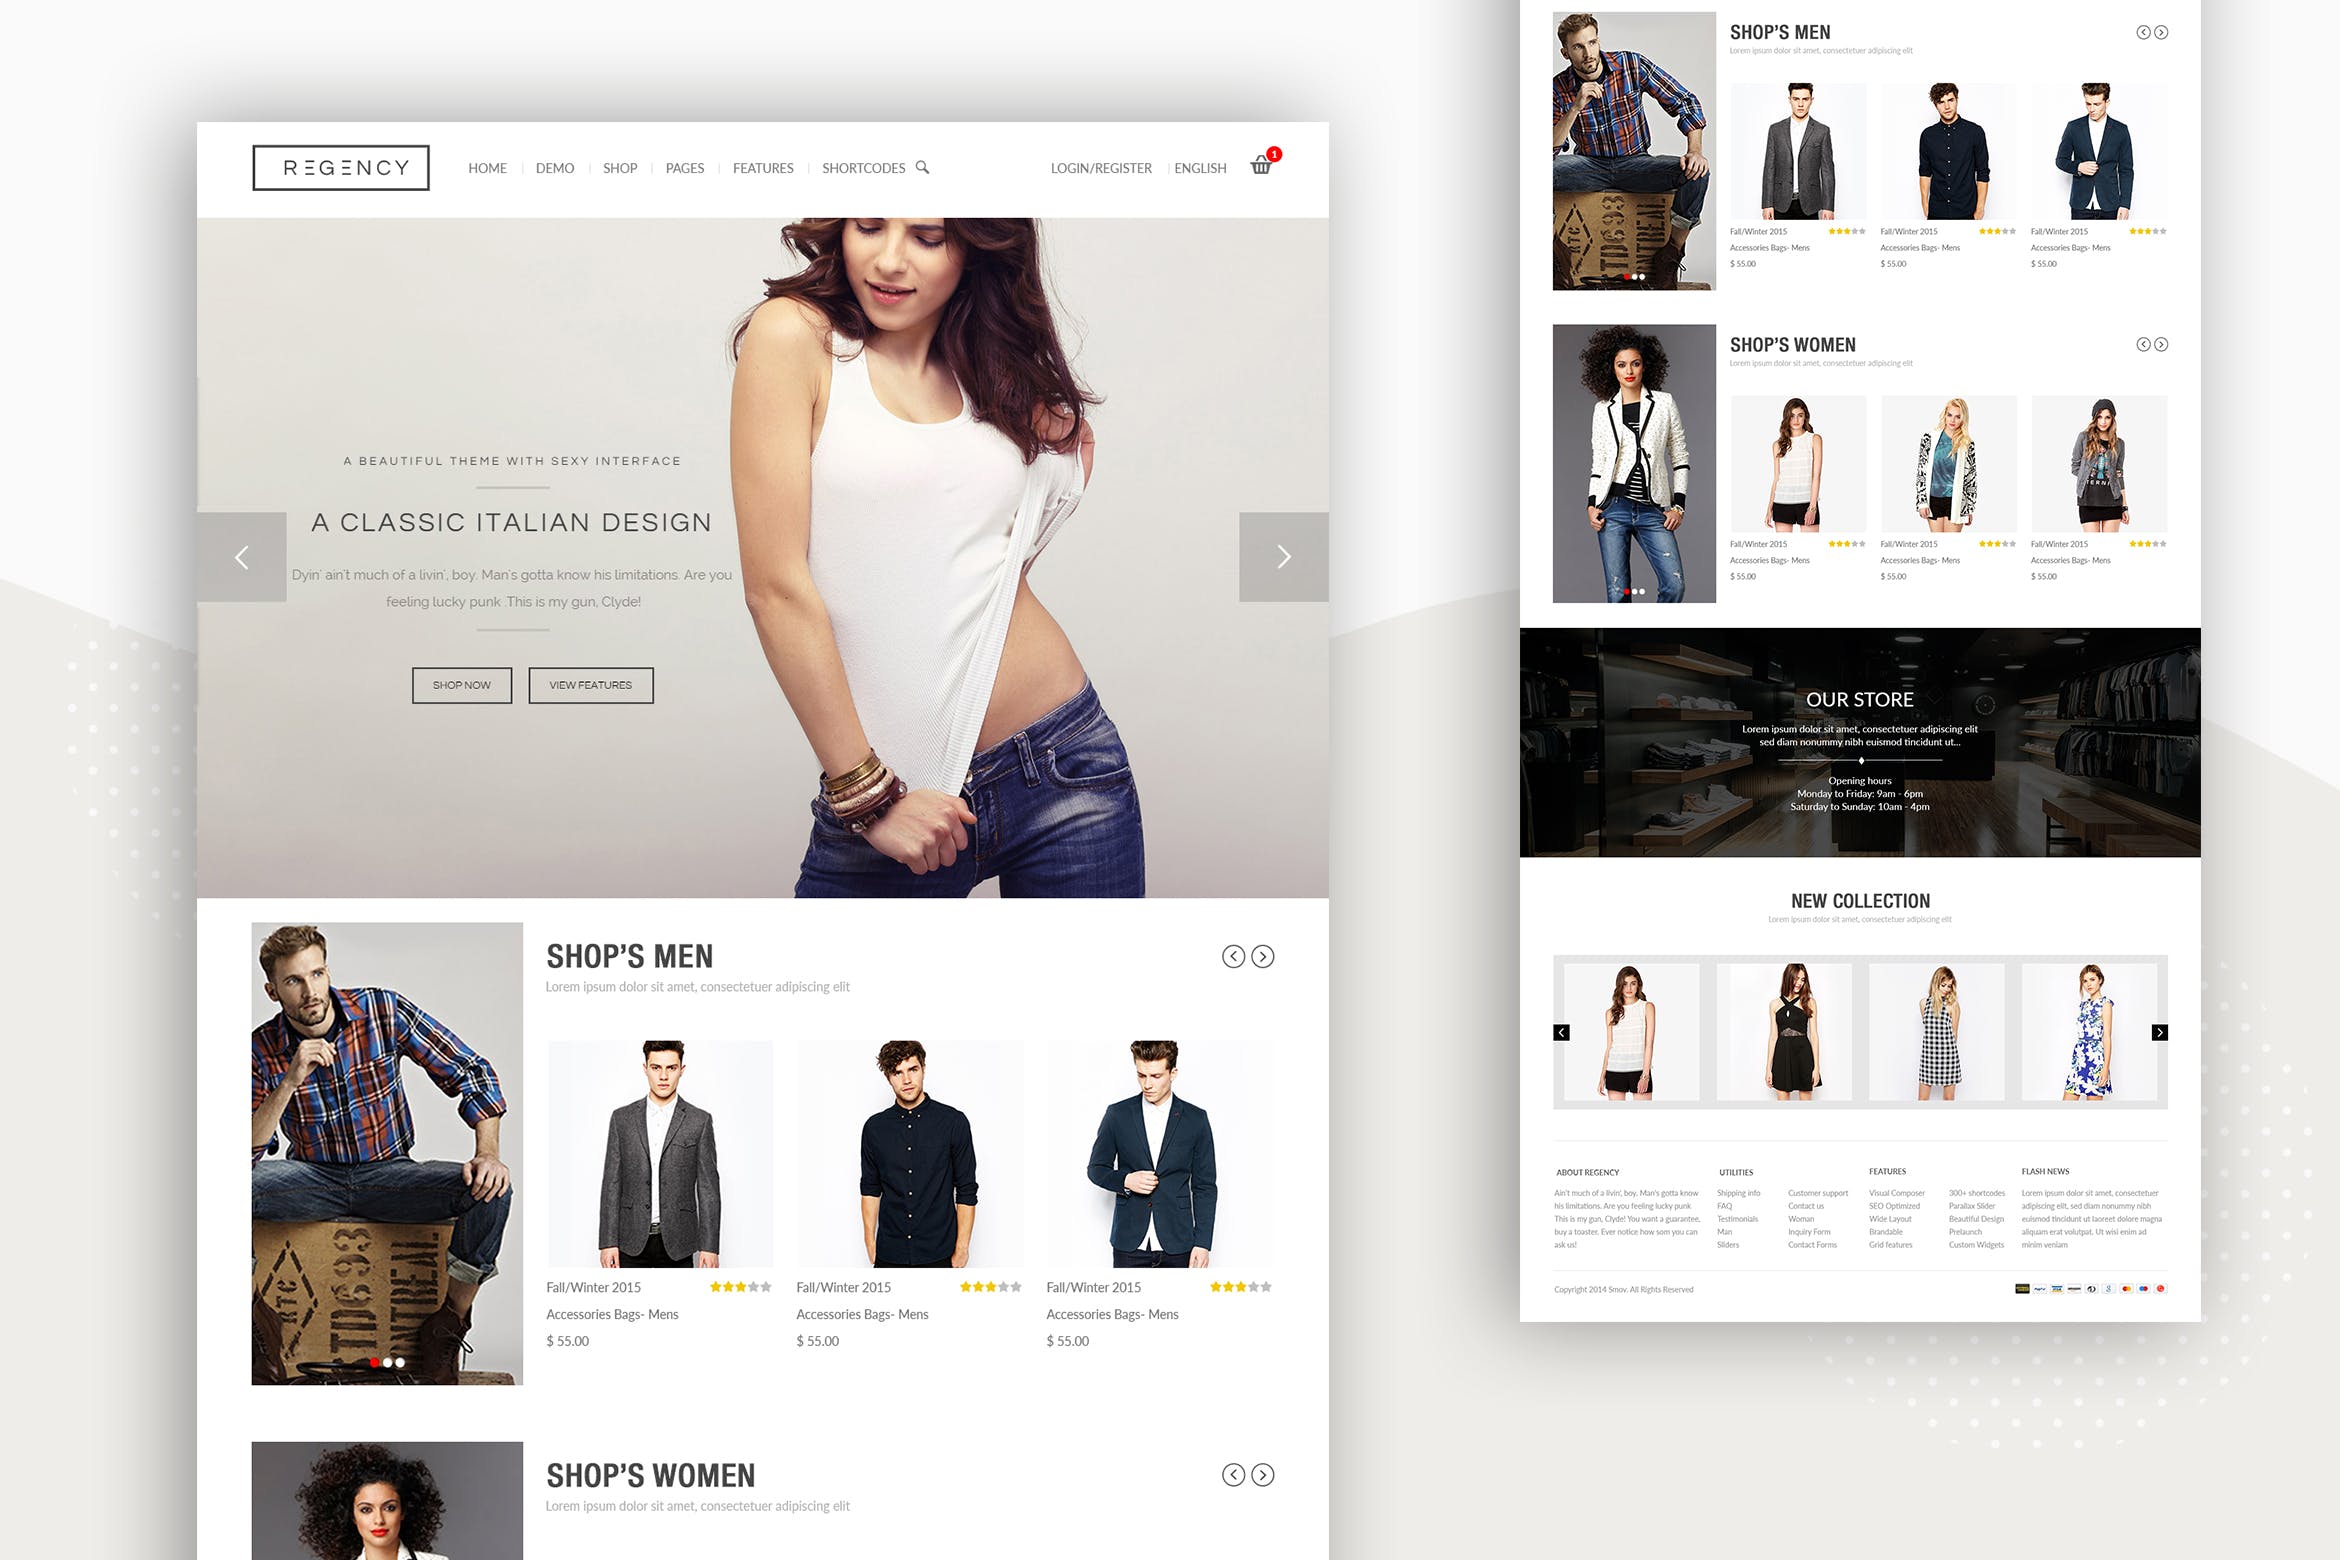 服装品牌商城网上商城UI界面设计模板 Retail – Web UI Design Concept插图